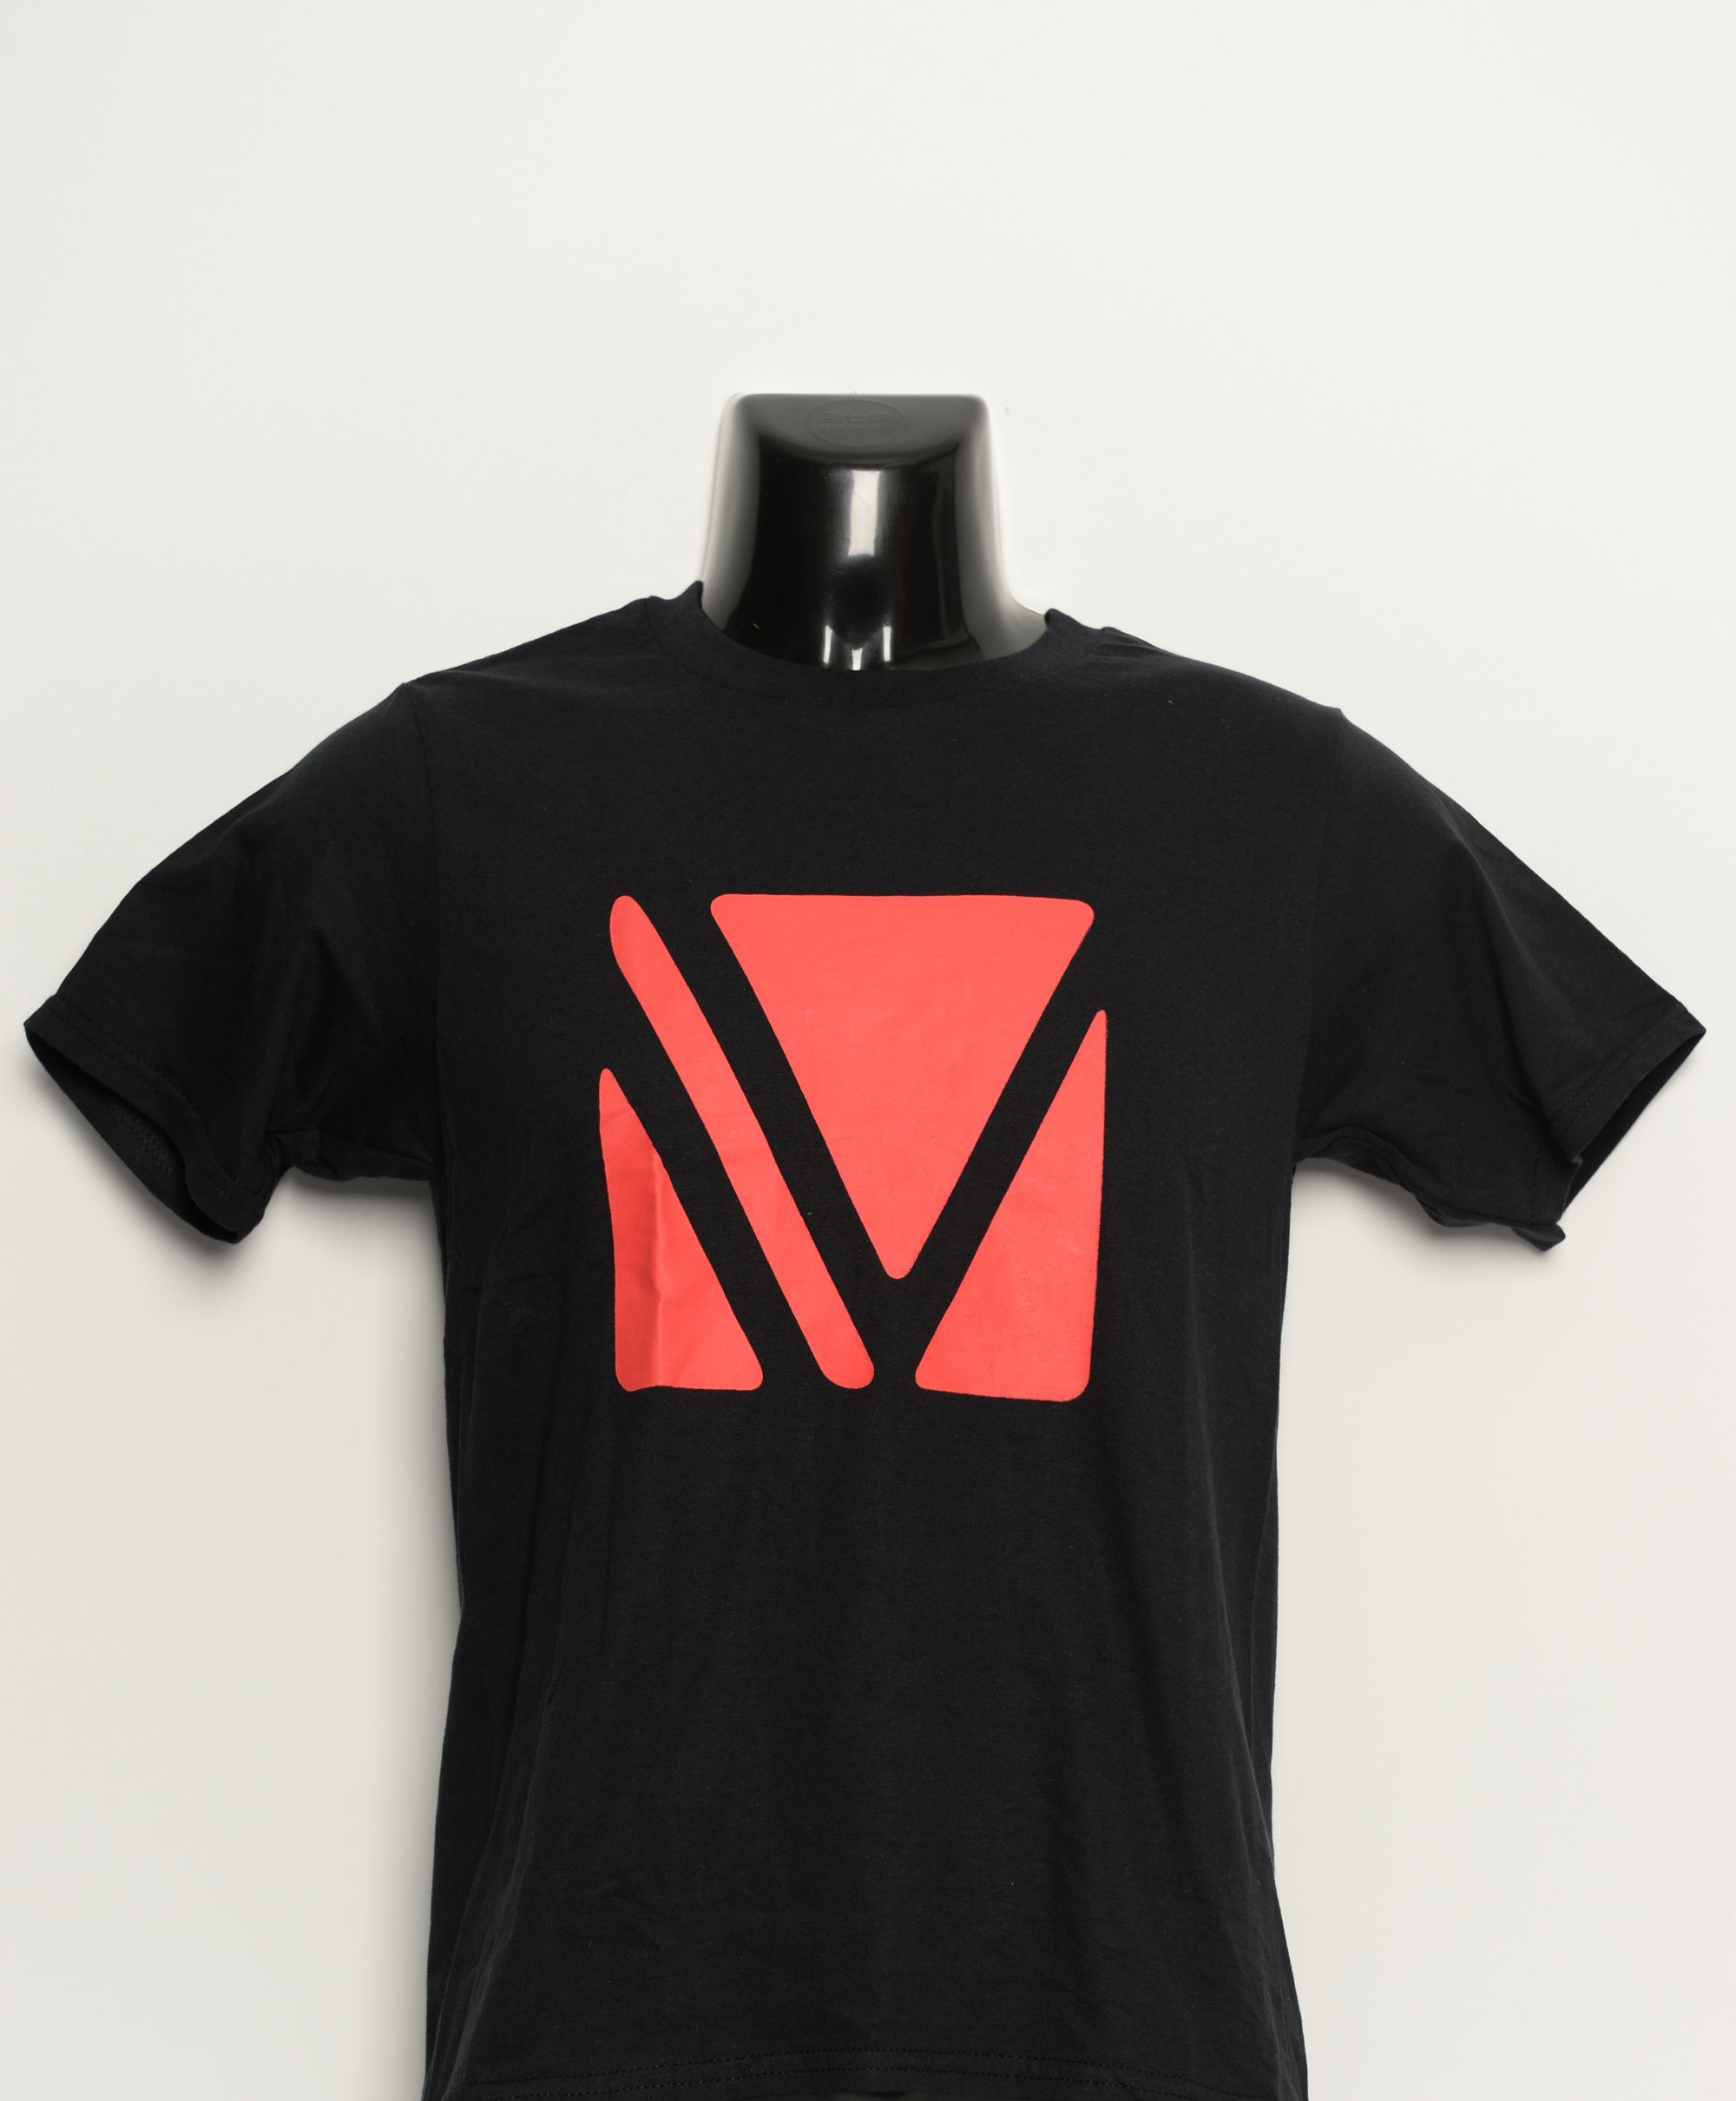  T-shirt • VAPTIO • Black XS 